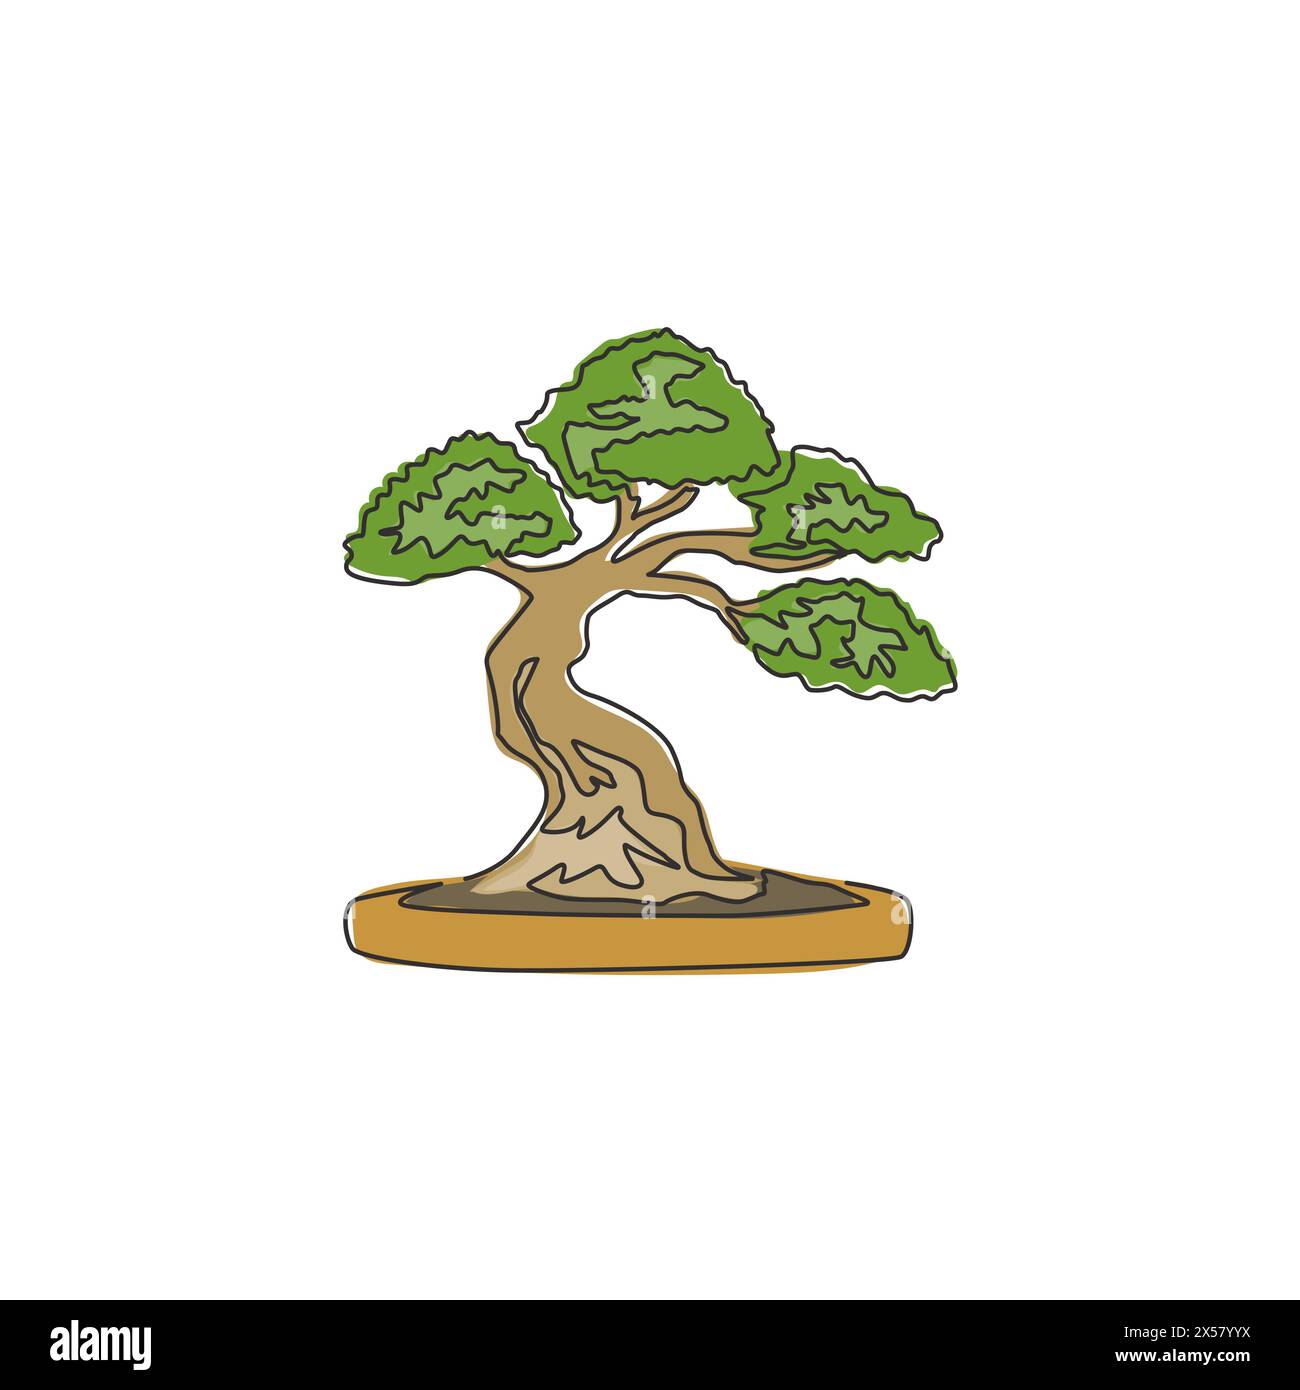 Eine durchgehende Linie, die alte Schönheit, exotischen kleinen Bonsaibaum für Wohnkunst, Wanddekoration, Poster, zeigt. Dekorative antike Topfpflanze für den Pflanzenladen Stock Vektor